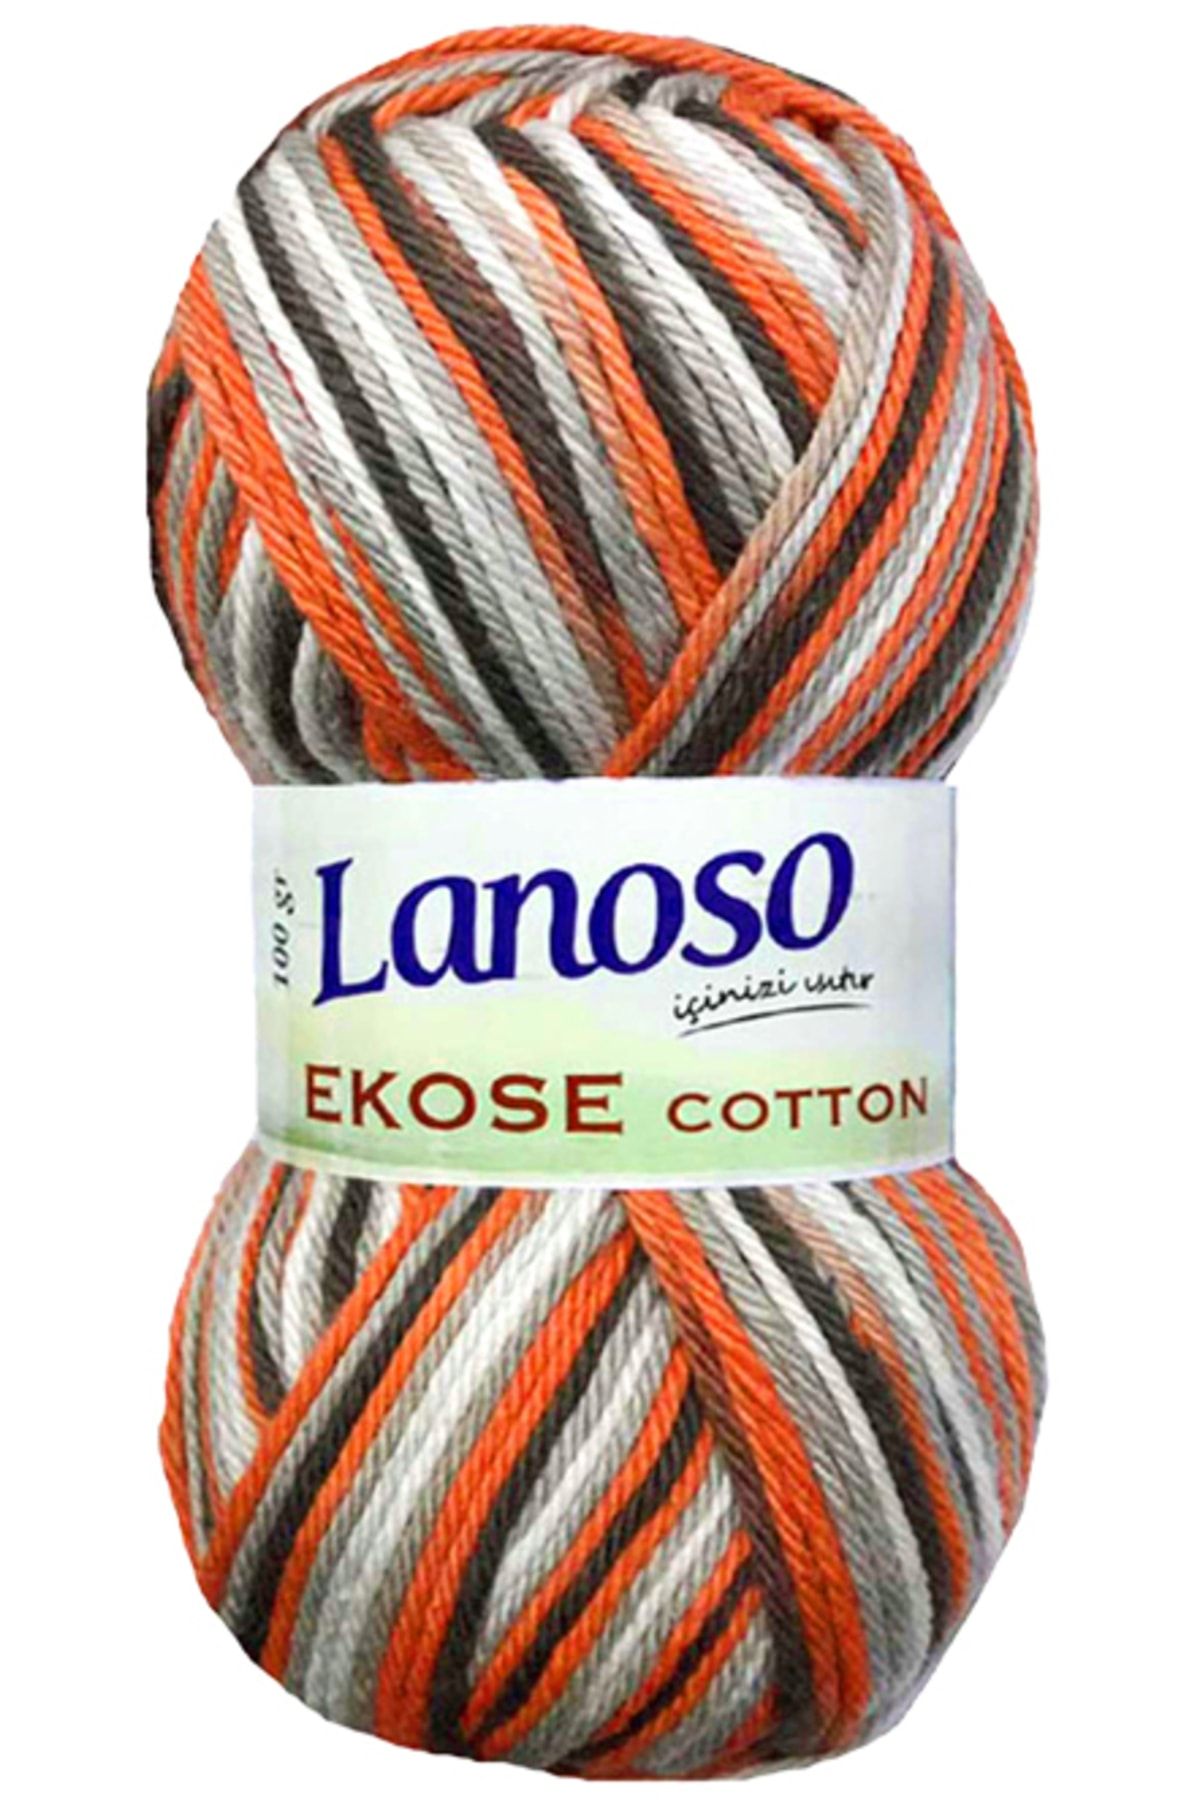 Lanoso Ekose Cotton 806